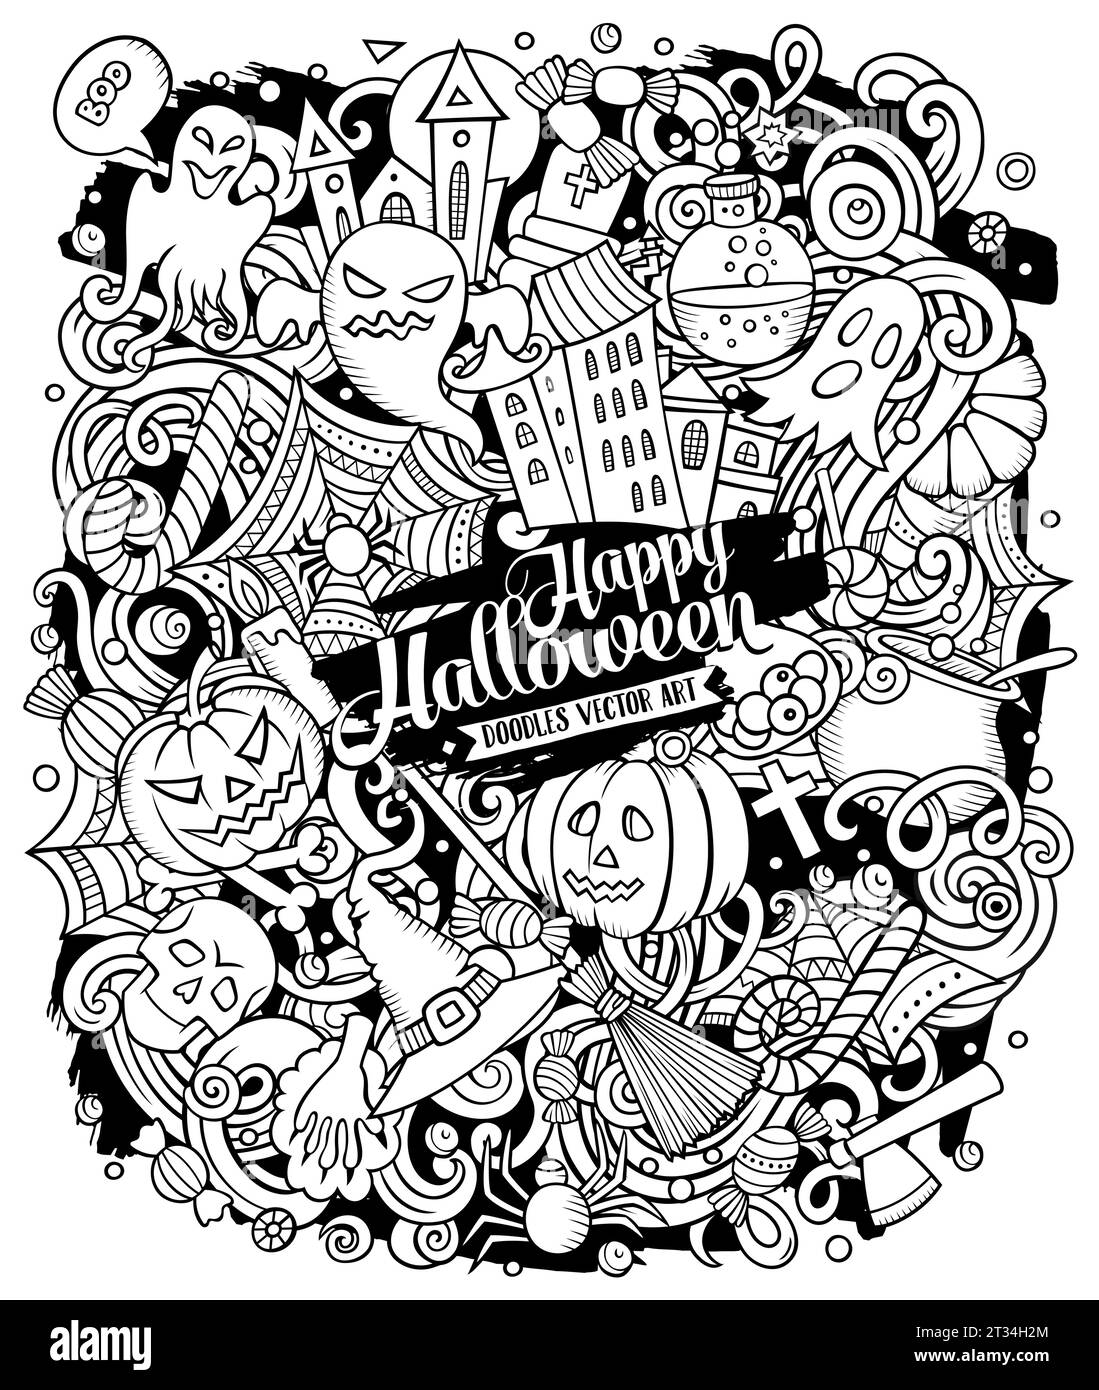 Cartoon Vektor Kritzeleien Happy Halloween Illustration. Skizzenhaft, detailliert, mit vielen Objekten Hintergrund. Alle Objekte sind getrennt Stock Vektor